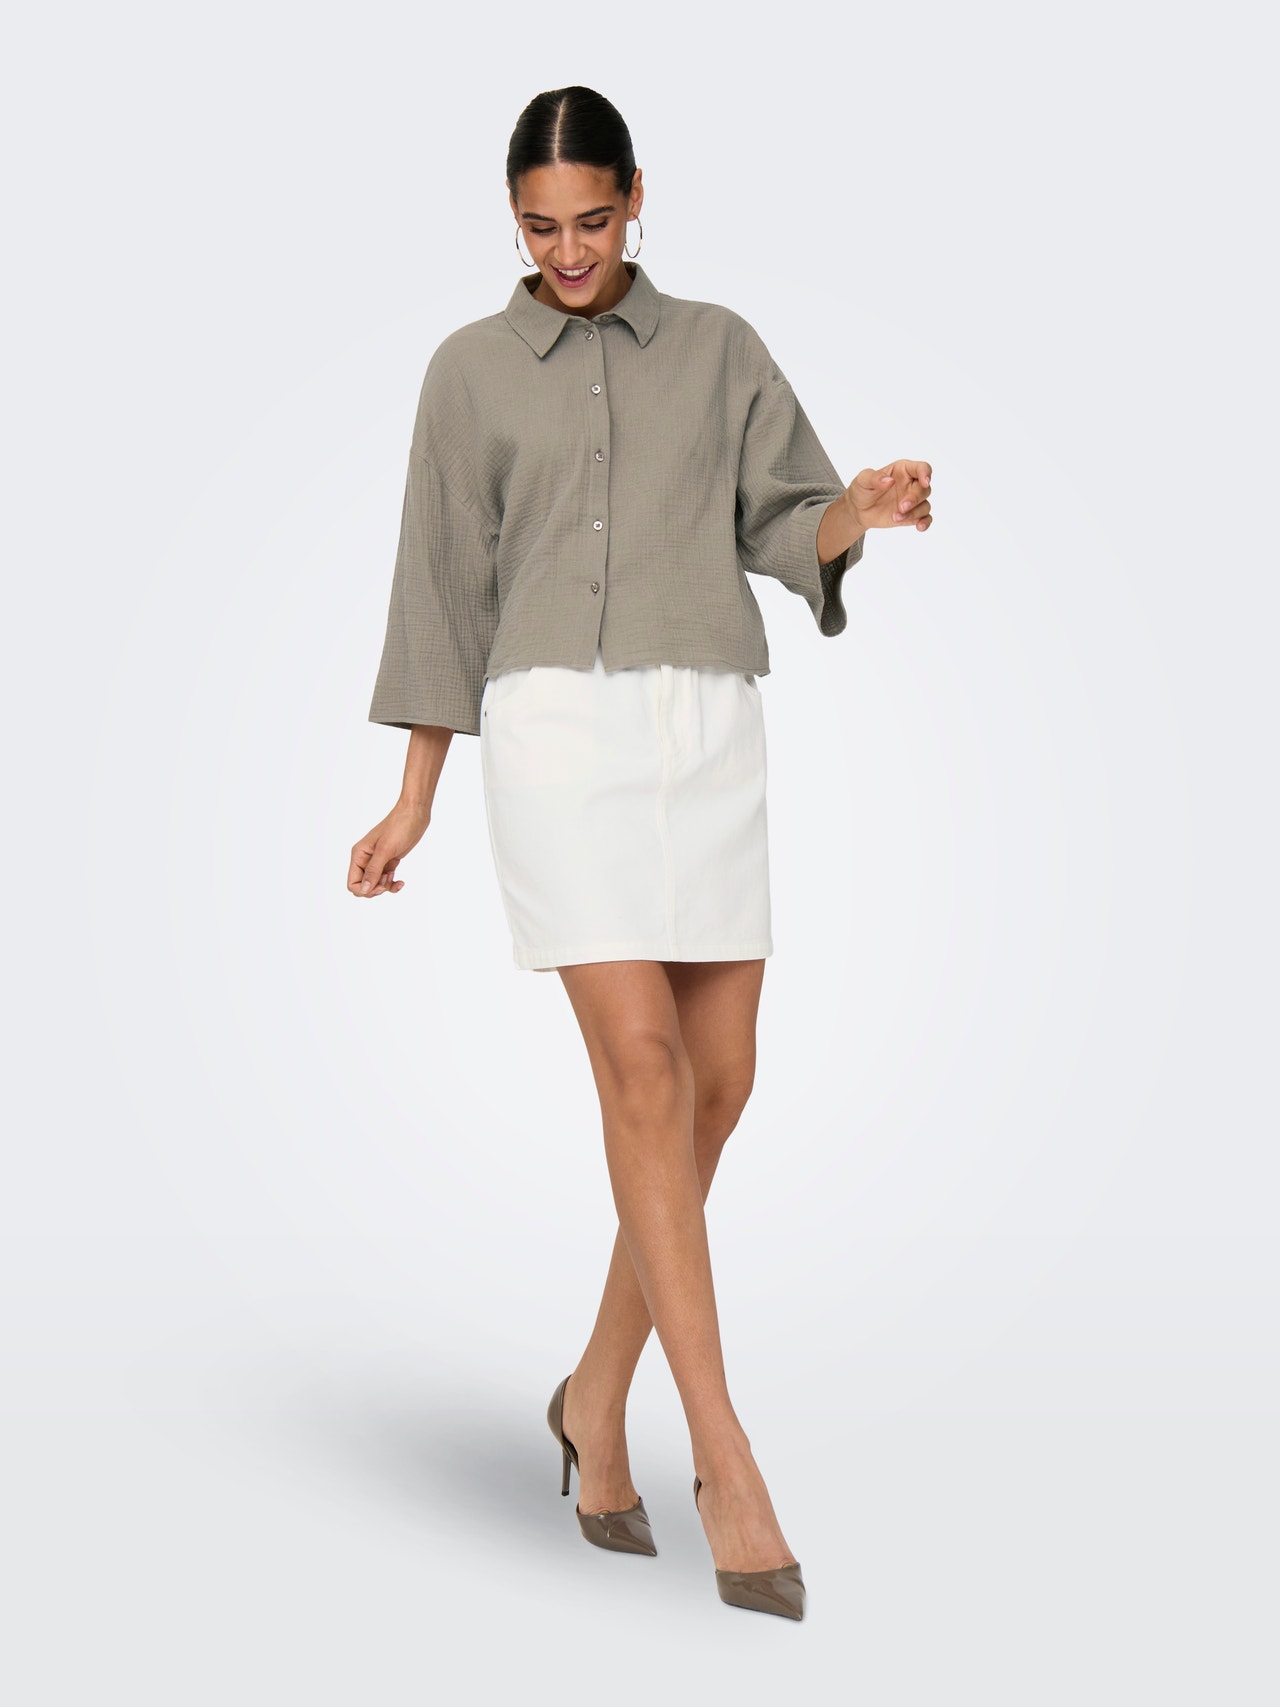 ONLY Mini skirt with high waist -Cloud Dancer - 15295671